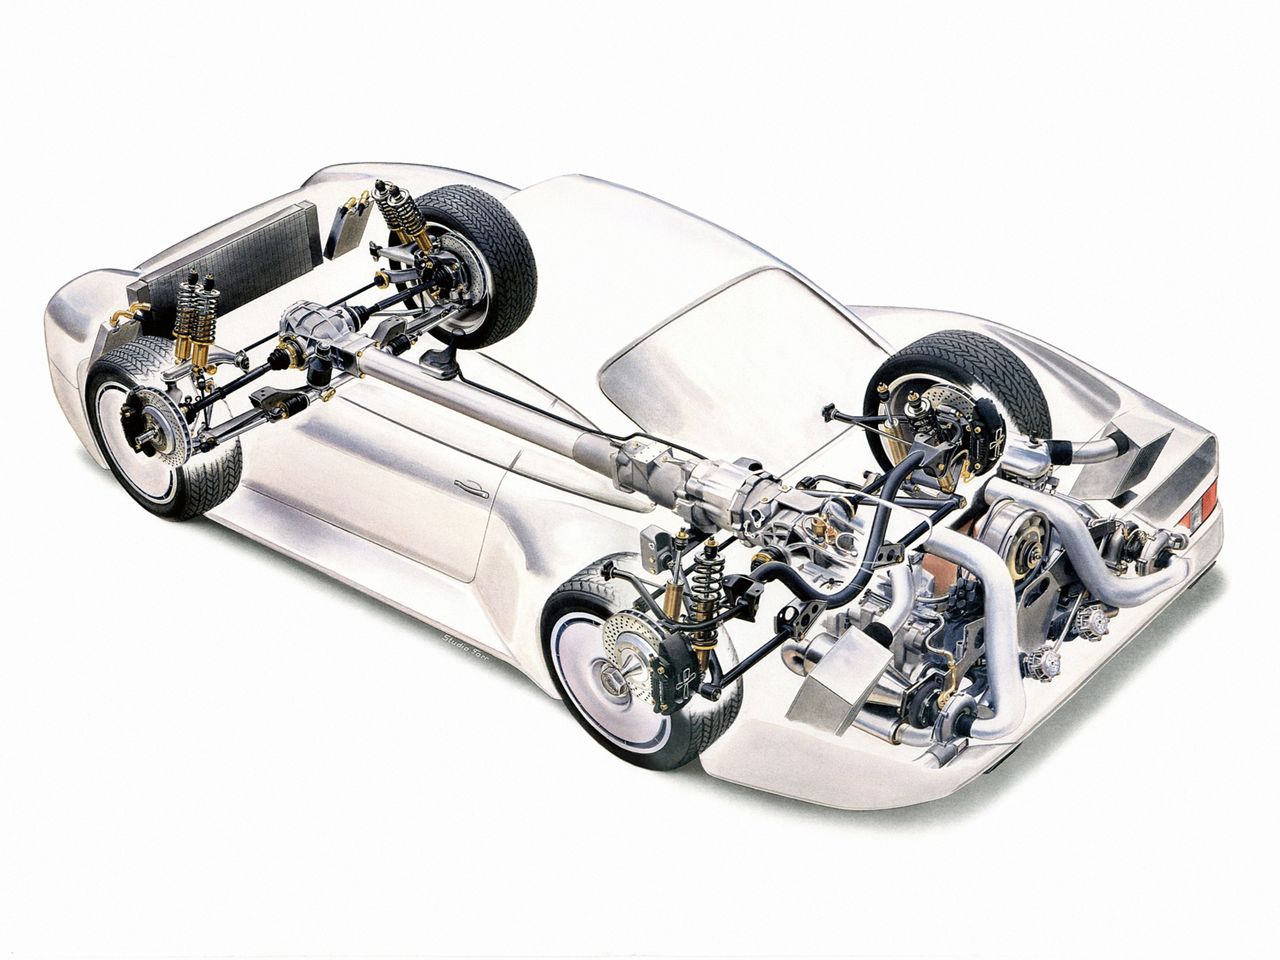 Porsche 959 zostało wyposażone w już istniejący silnik. Był to 2,85-litrowy 6-cylindrowy bokser z turbodoładowaniem. Stosunkowo mała jednostka rozwijała aż 450 KM.